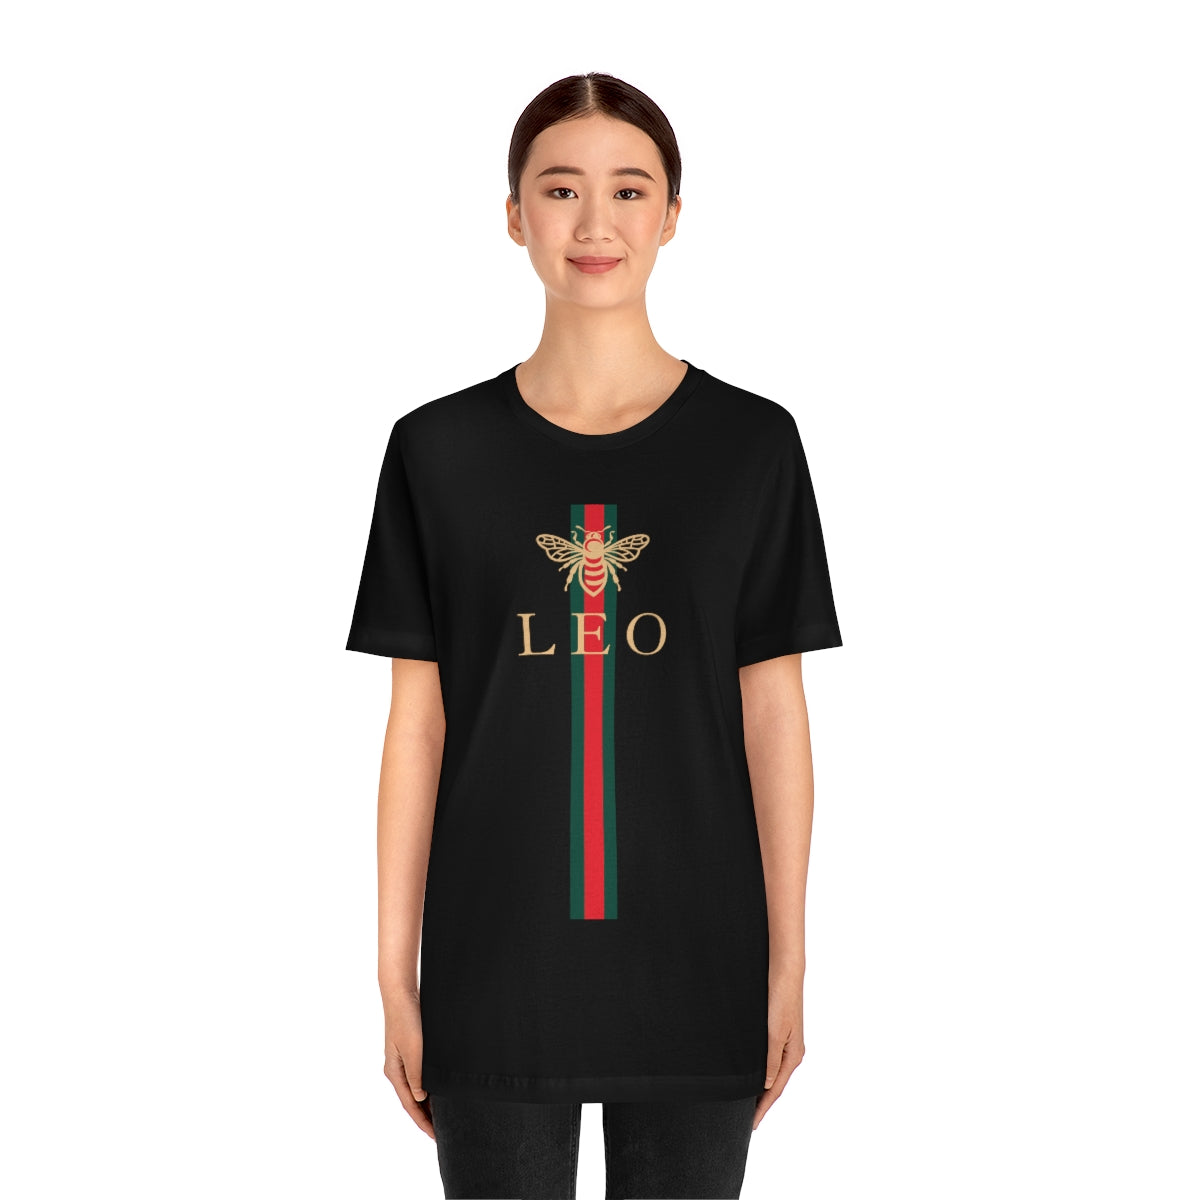 Leo Bee Girl Shirt